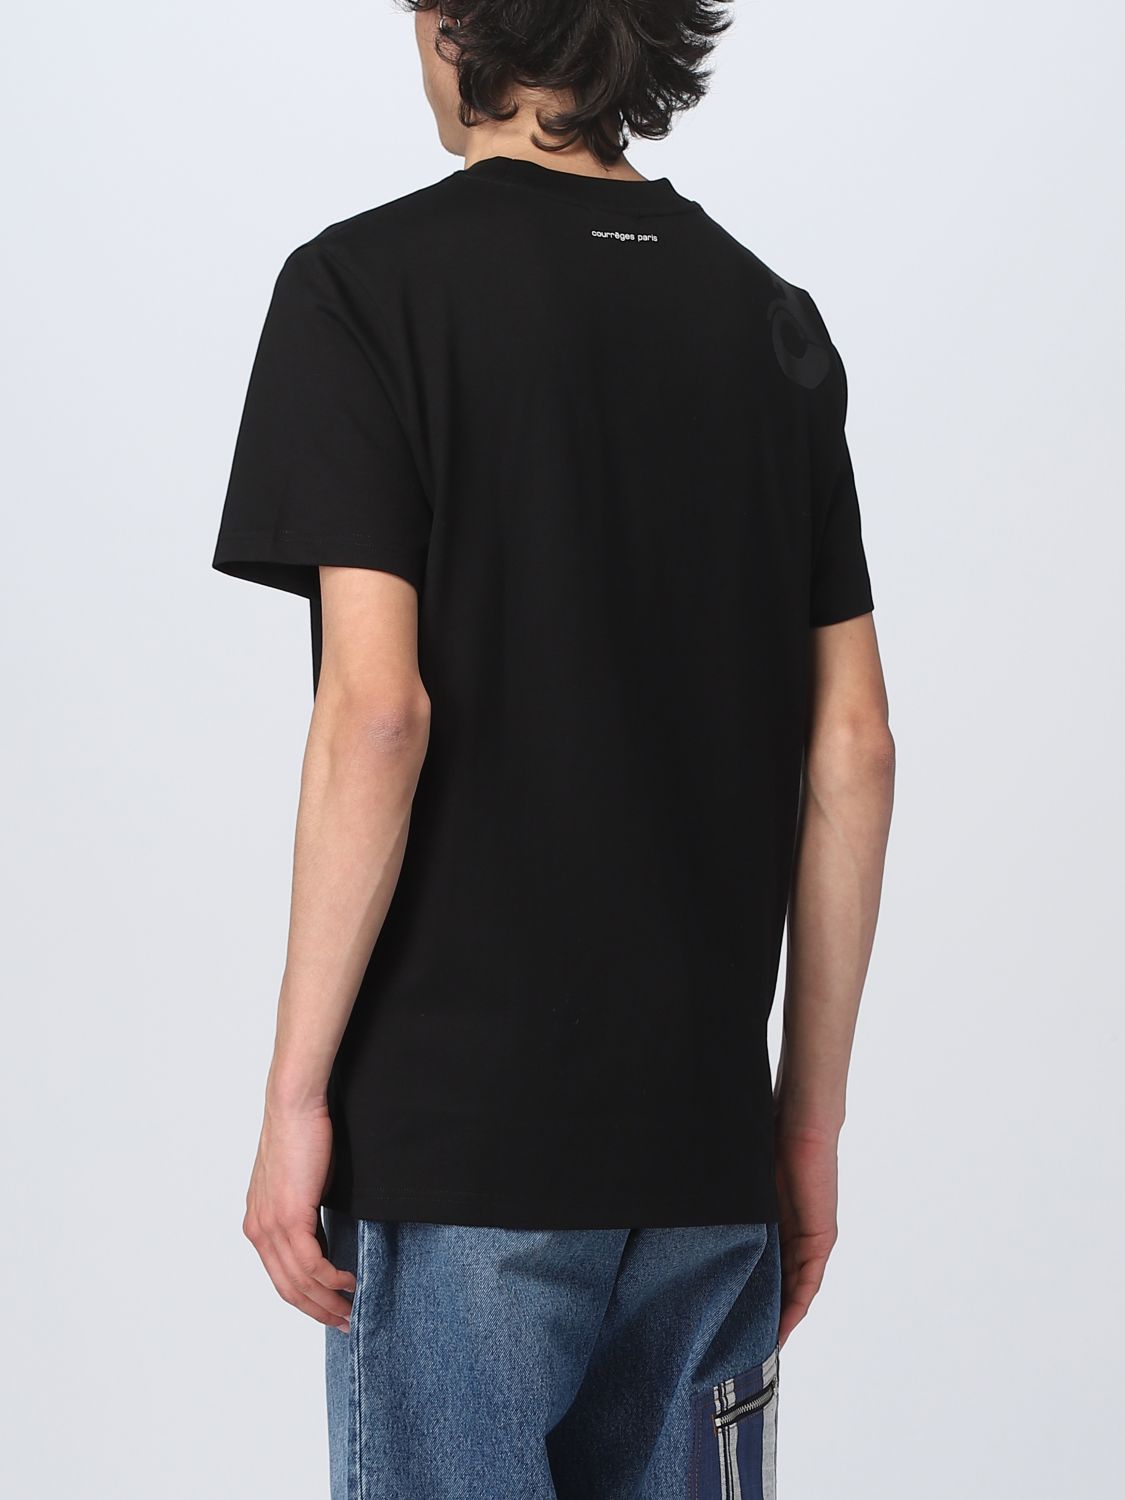 T-shirt Courrèges: T-shirt Courrèges homme noir 3